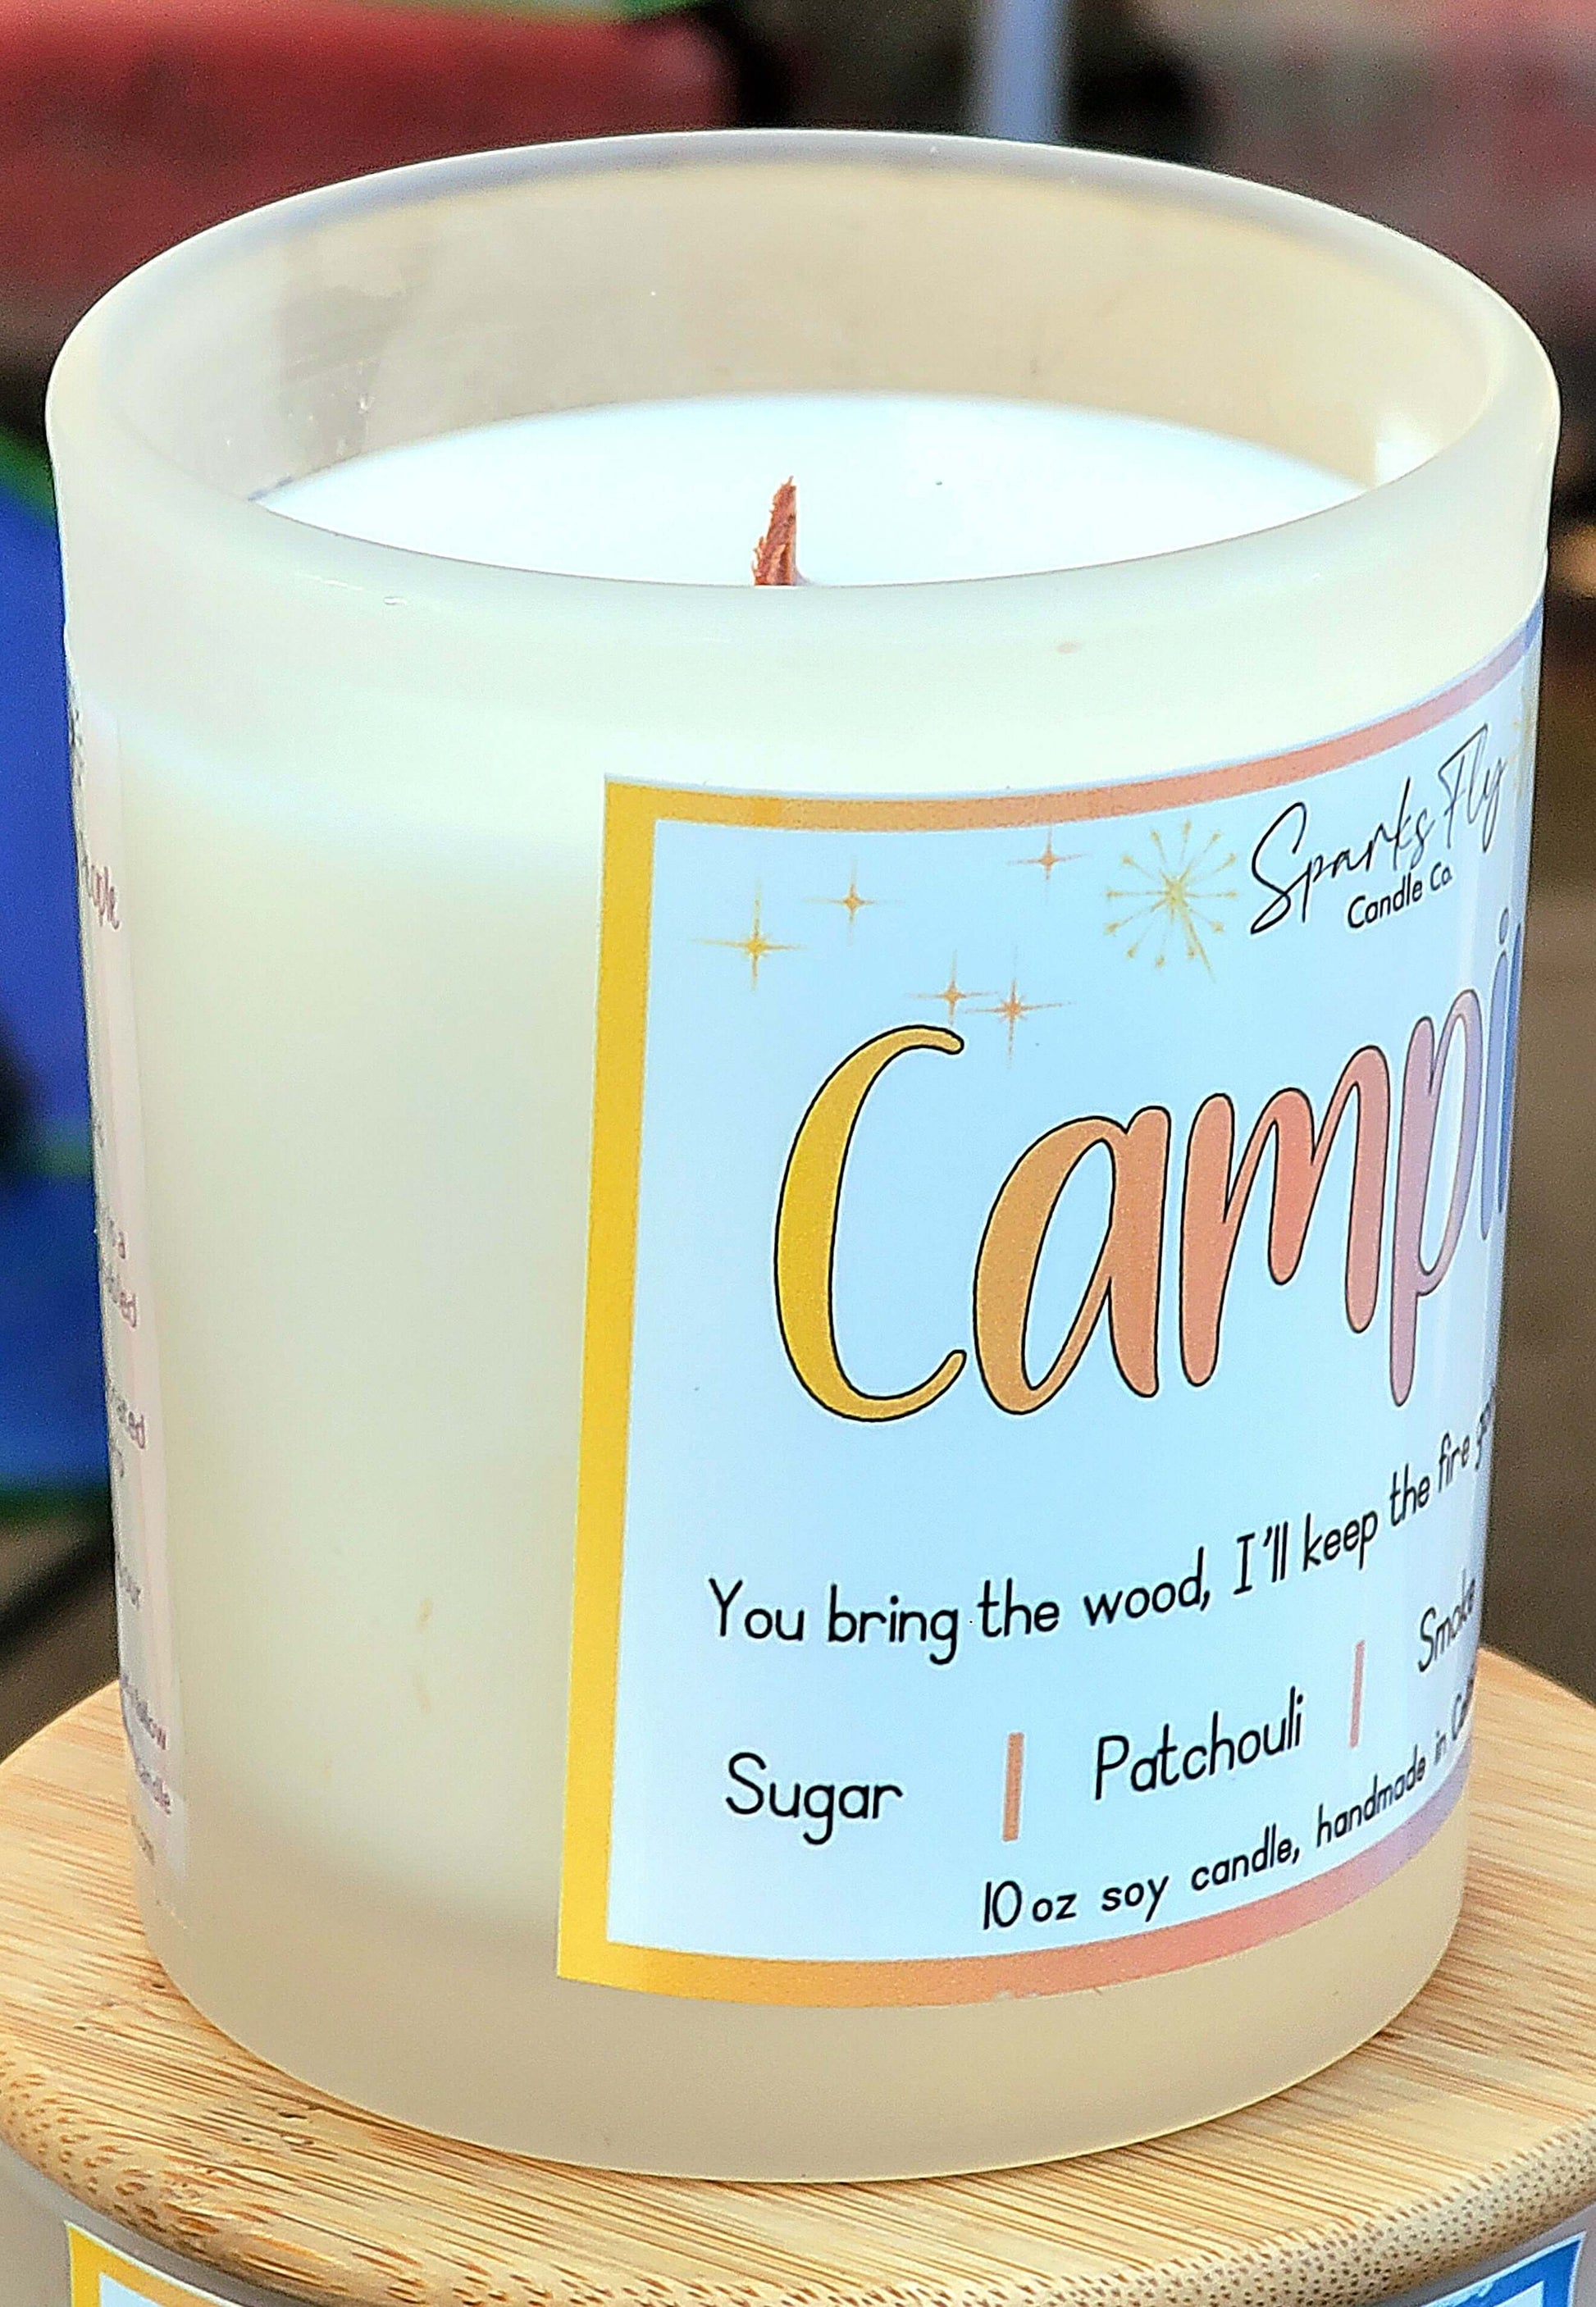 Camping sassy candle; humorous design hinting at campfire warmth and lasting memories